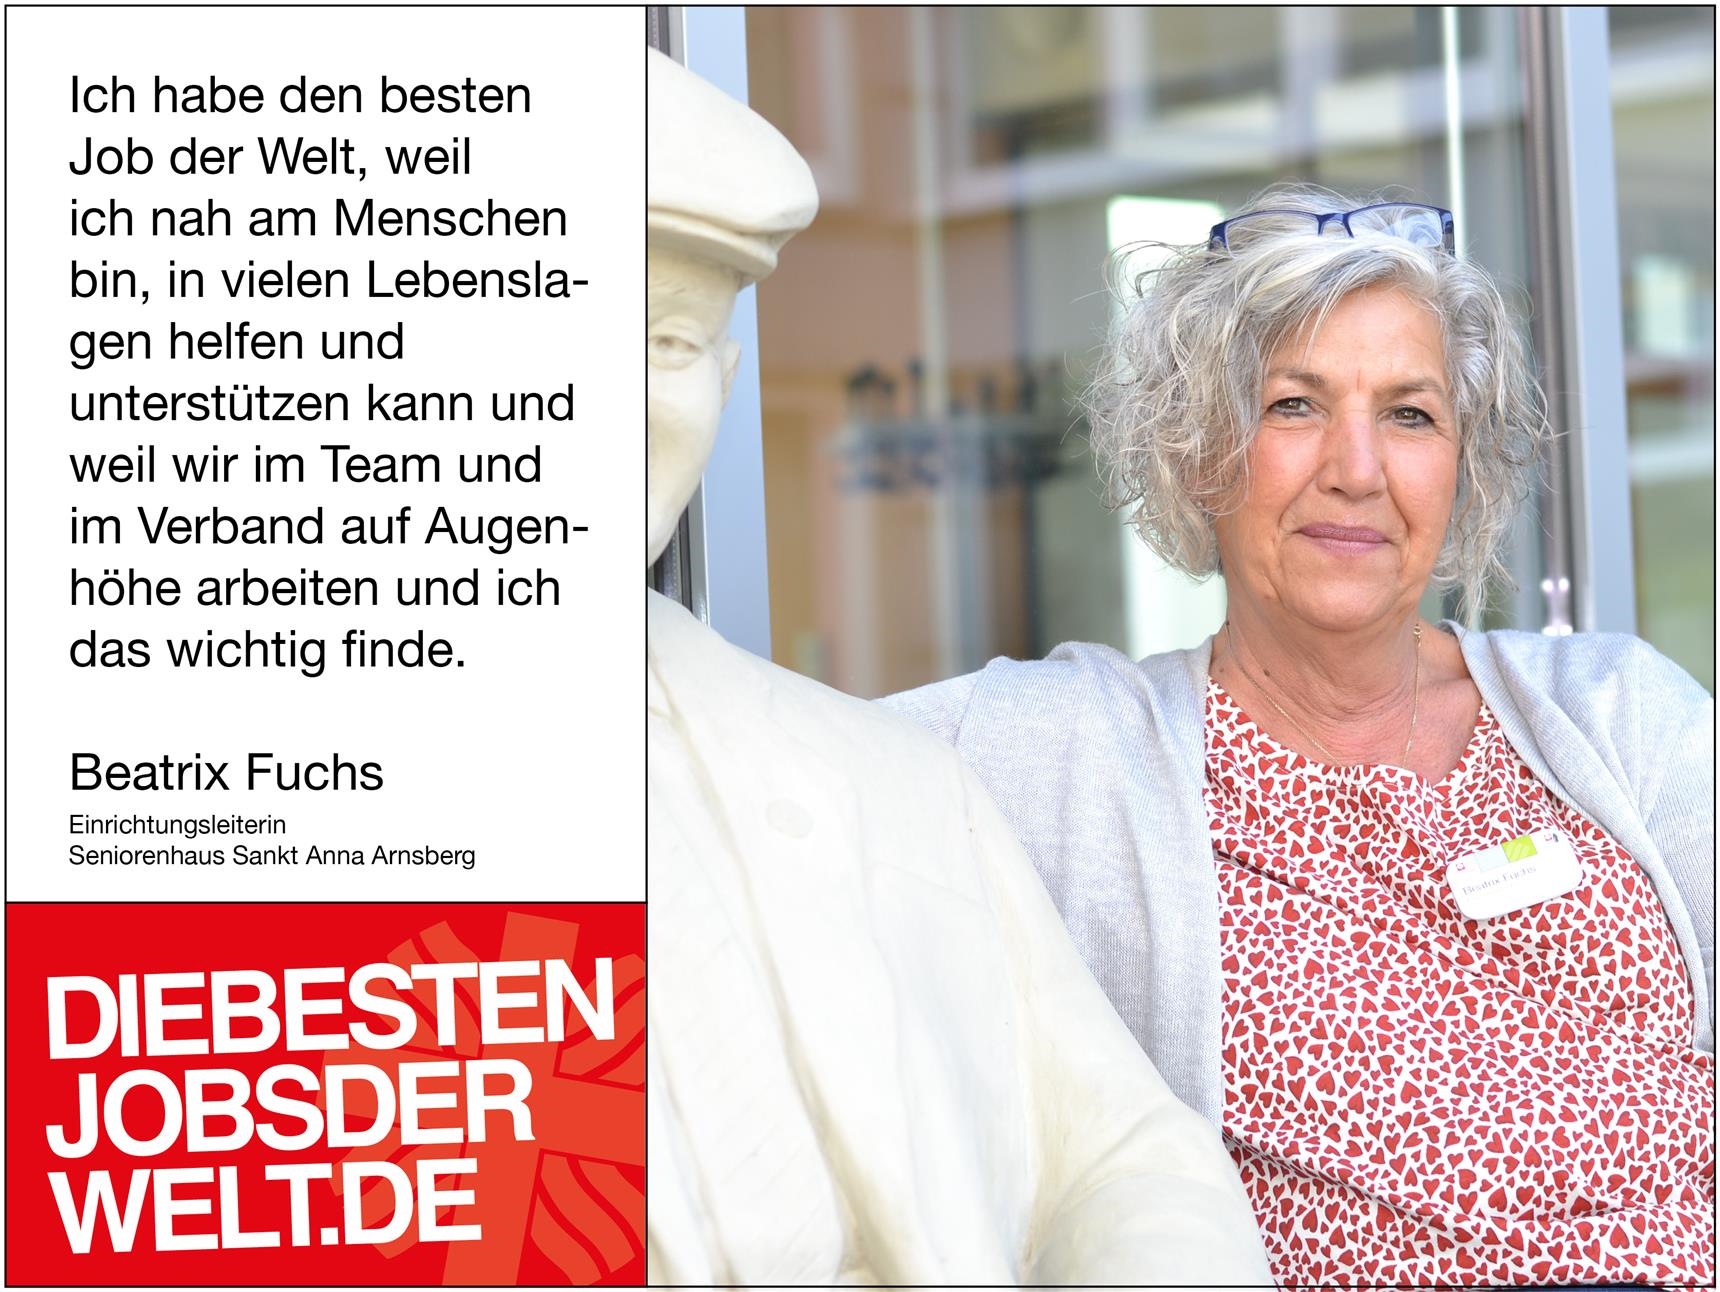 diebestenjobsderwelt - Beatrix Fuchs (Foto: Miriam Konietzny)